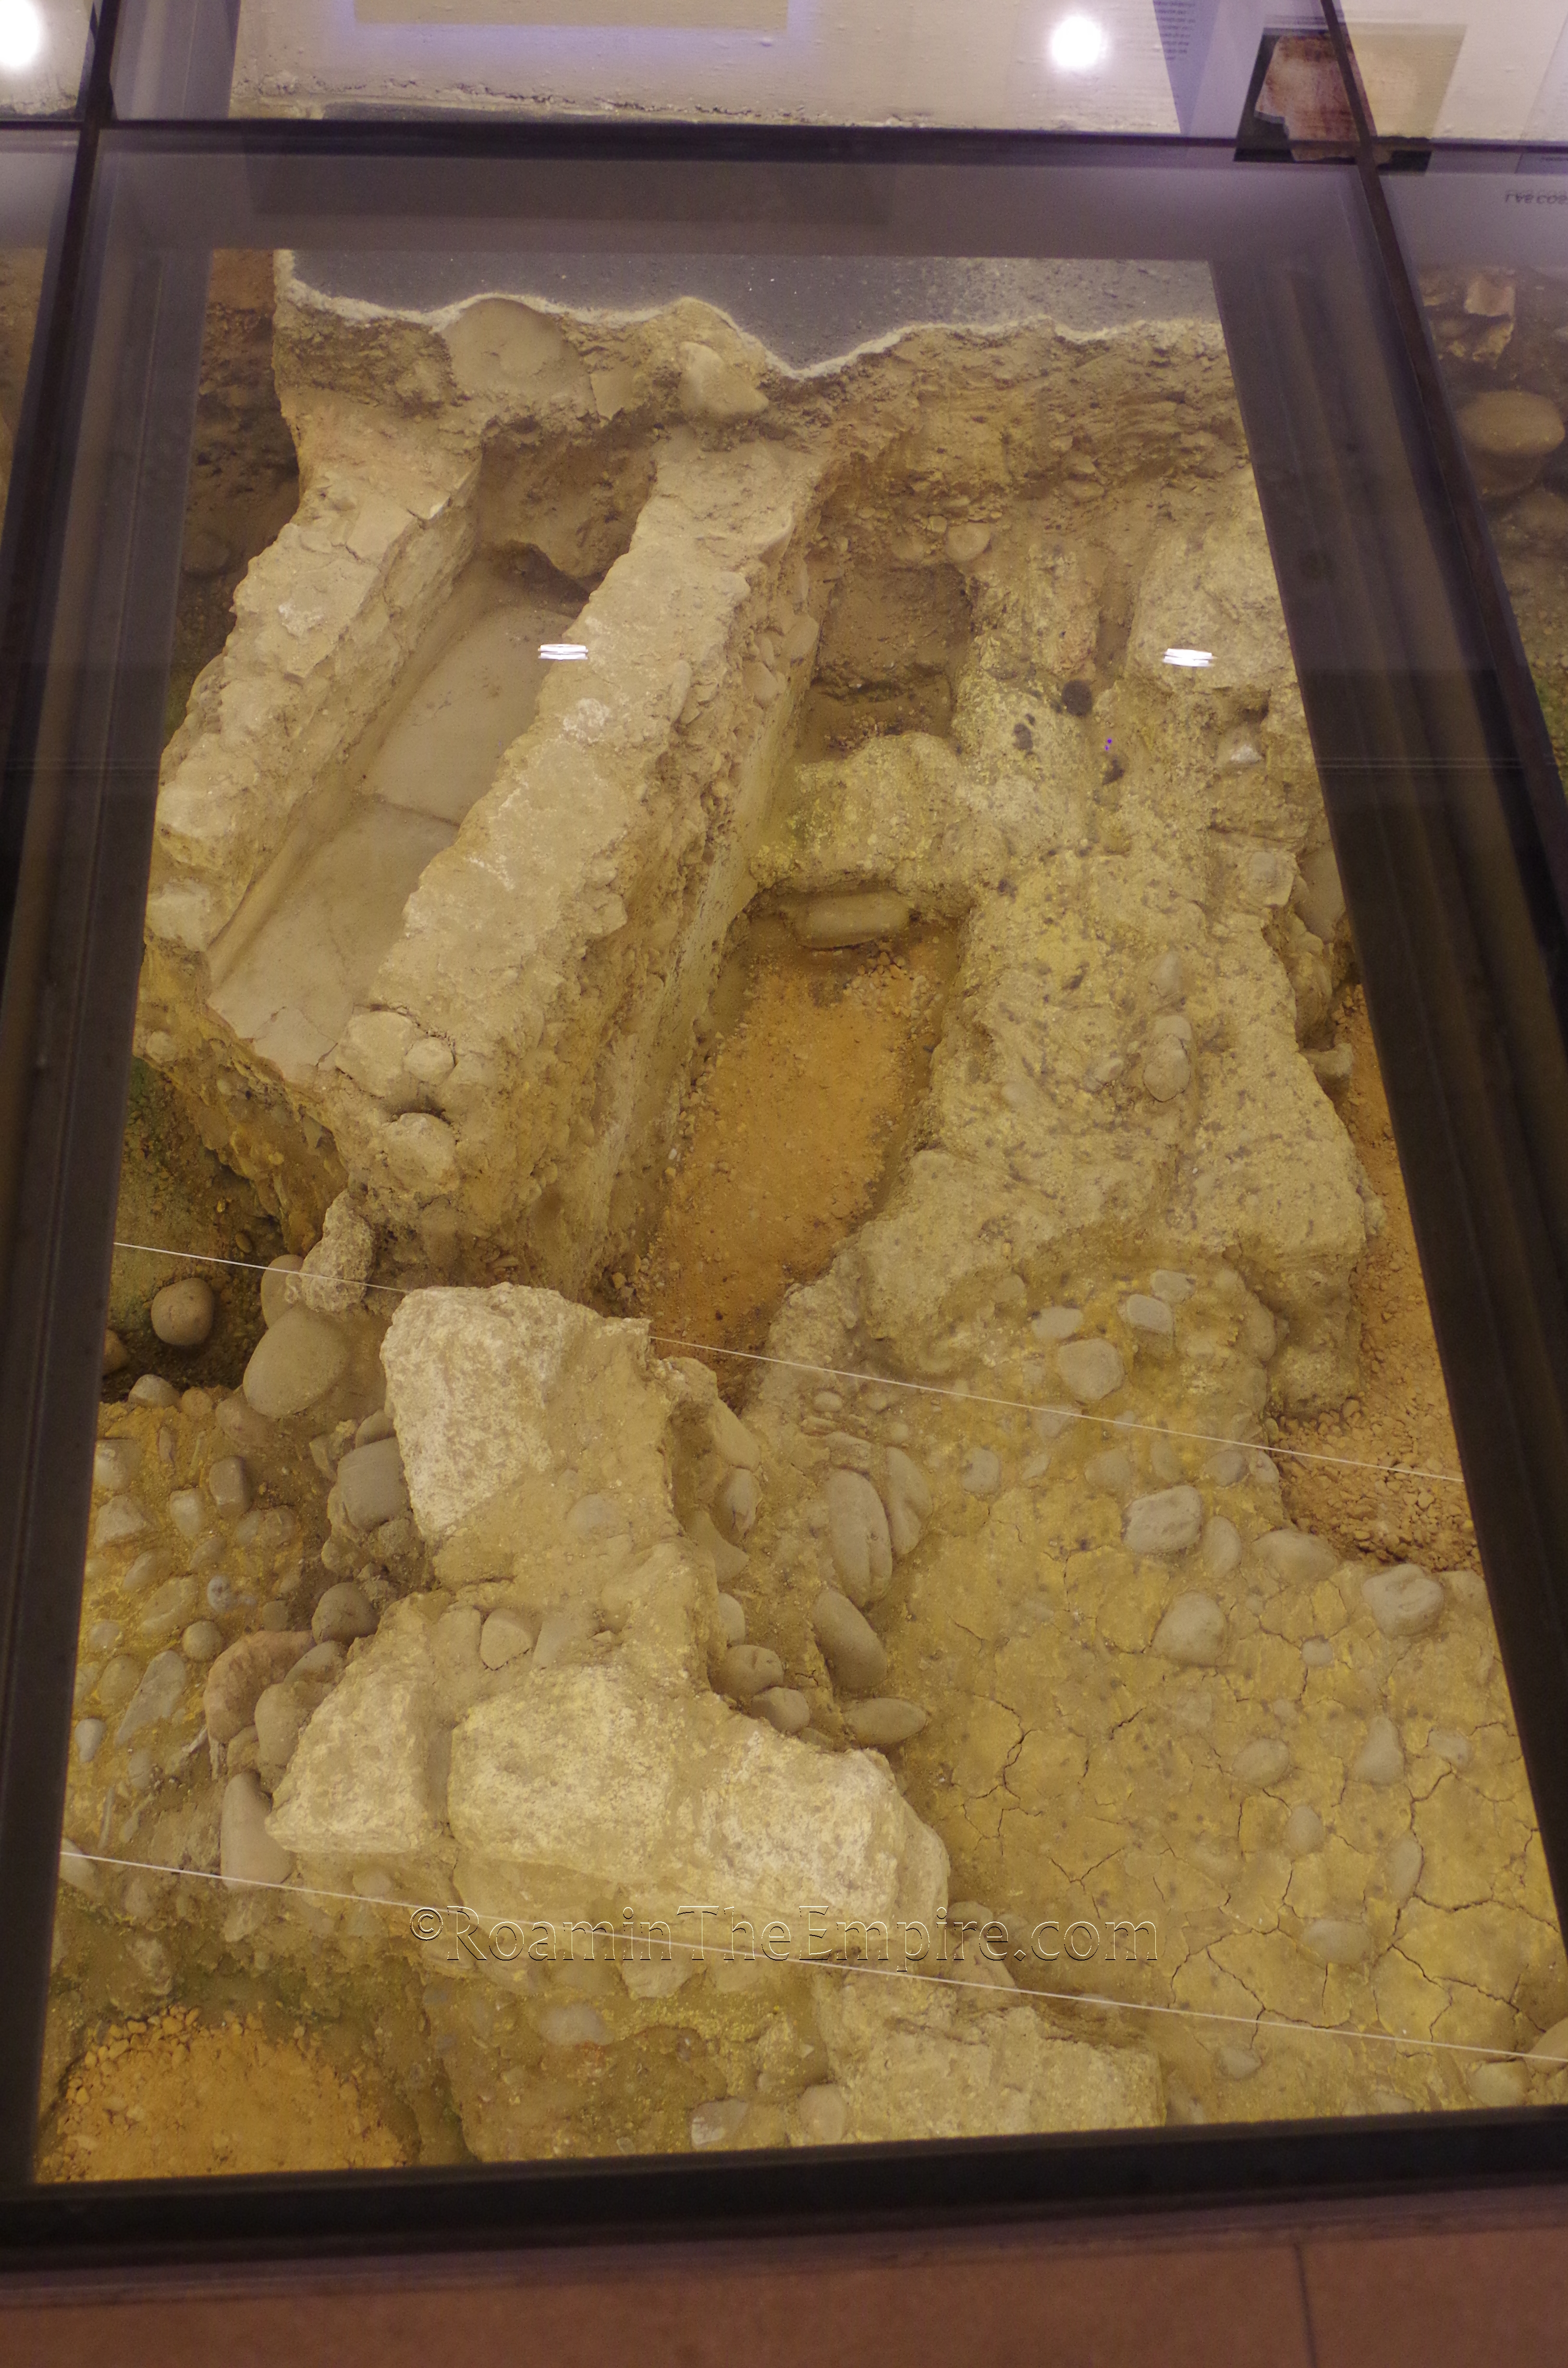 Excavated remains in the Centro de Interpretación del León Romano.